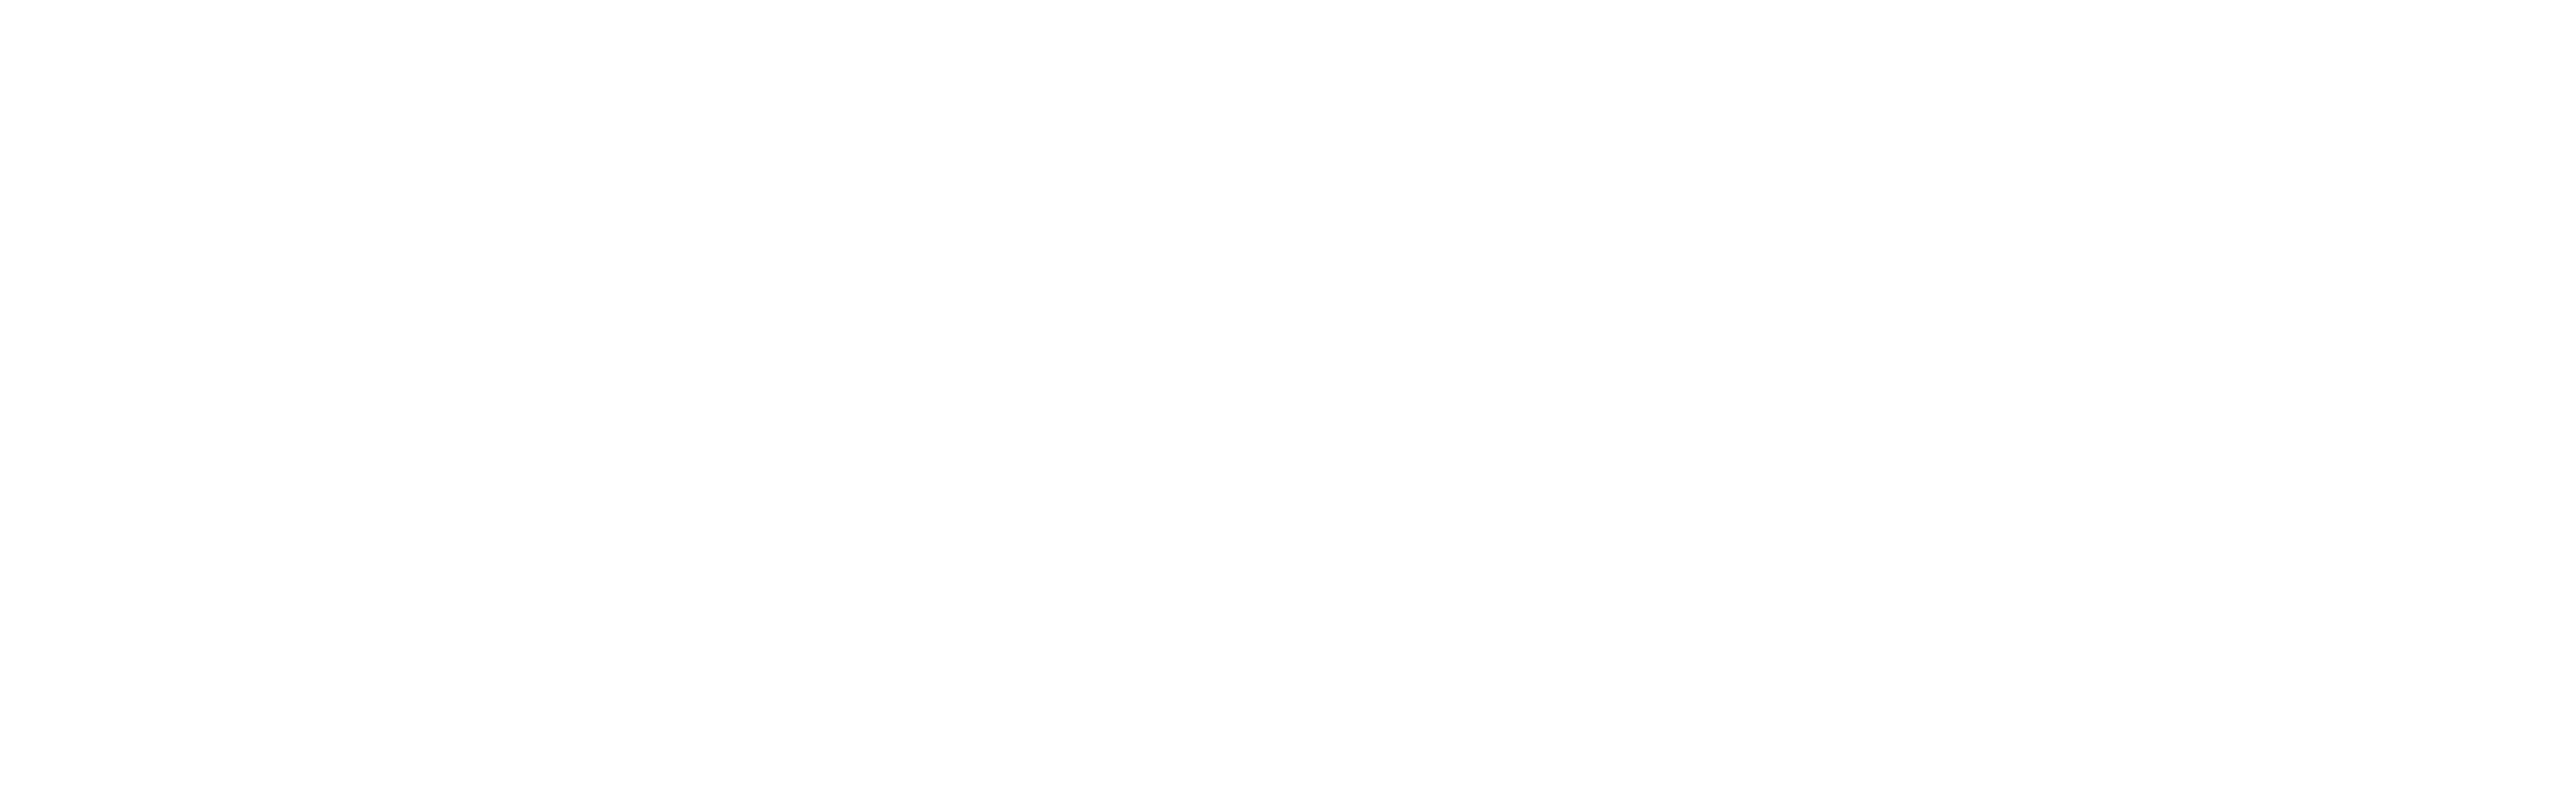 Moustachine